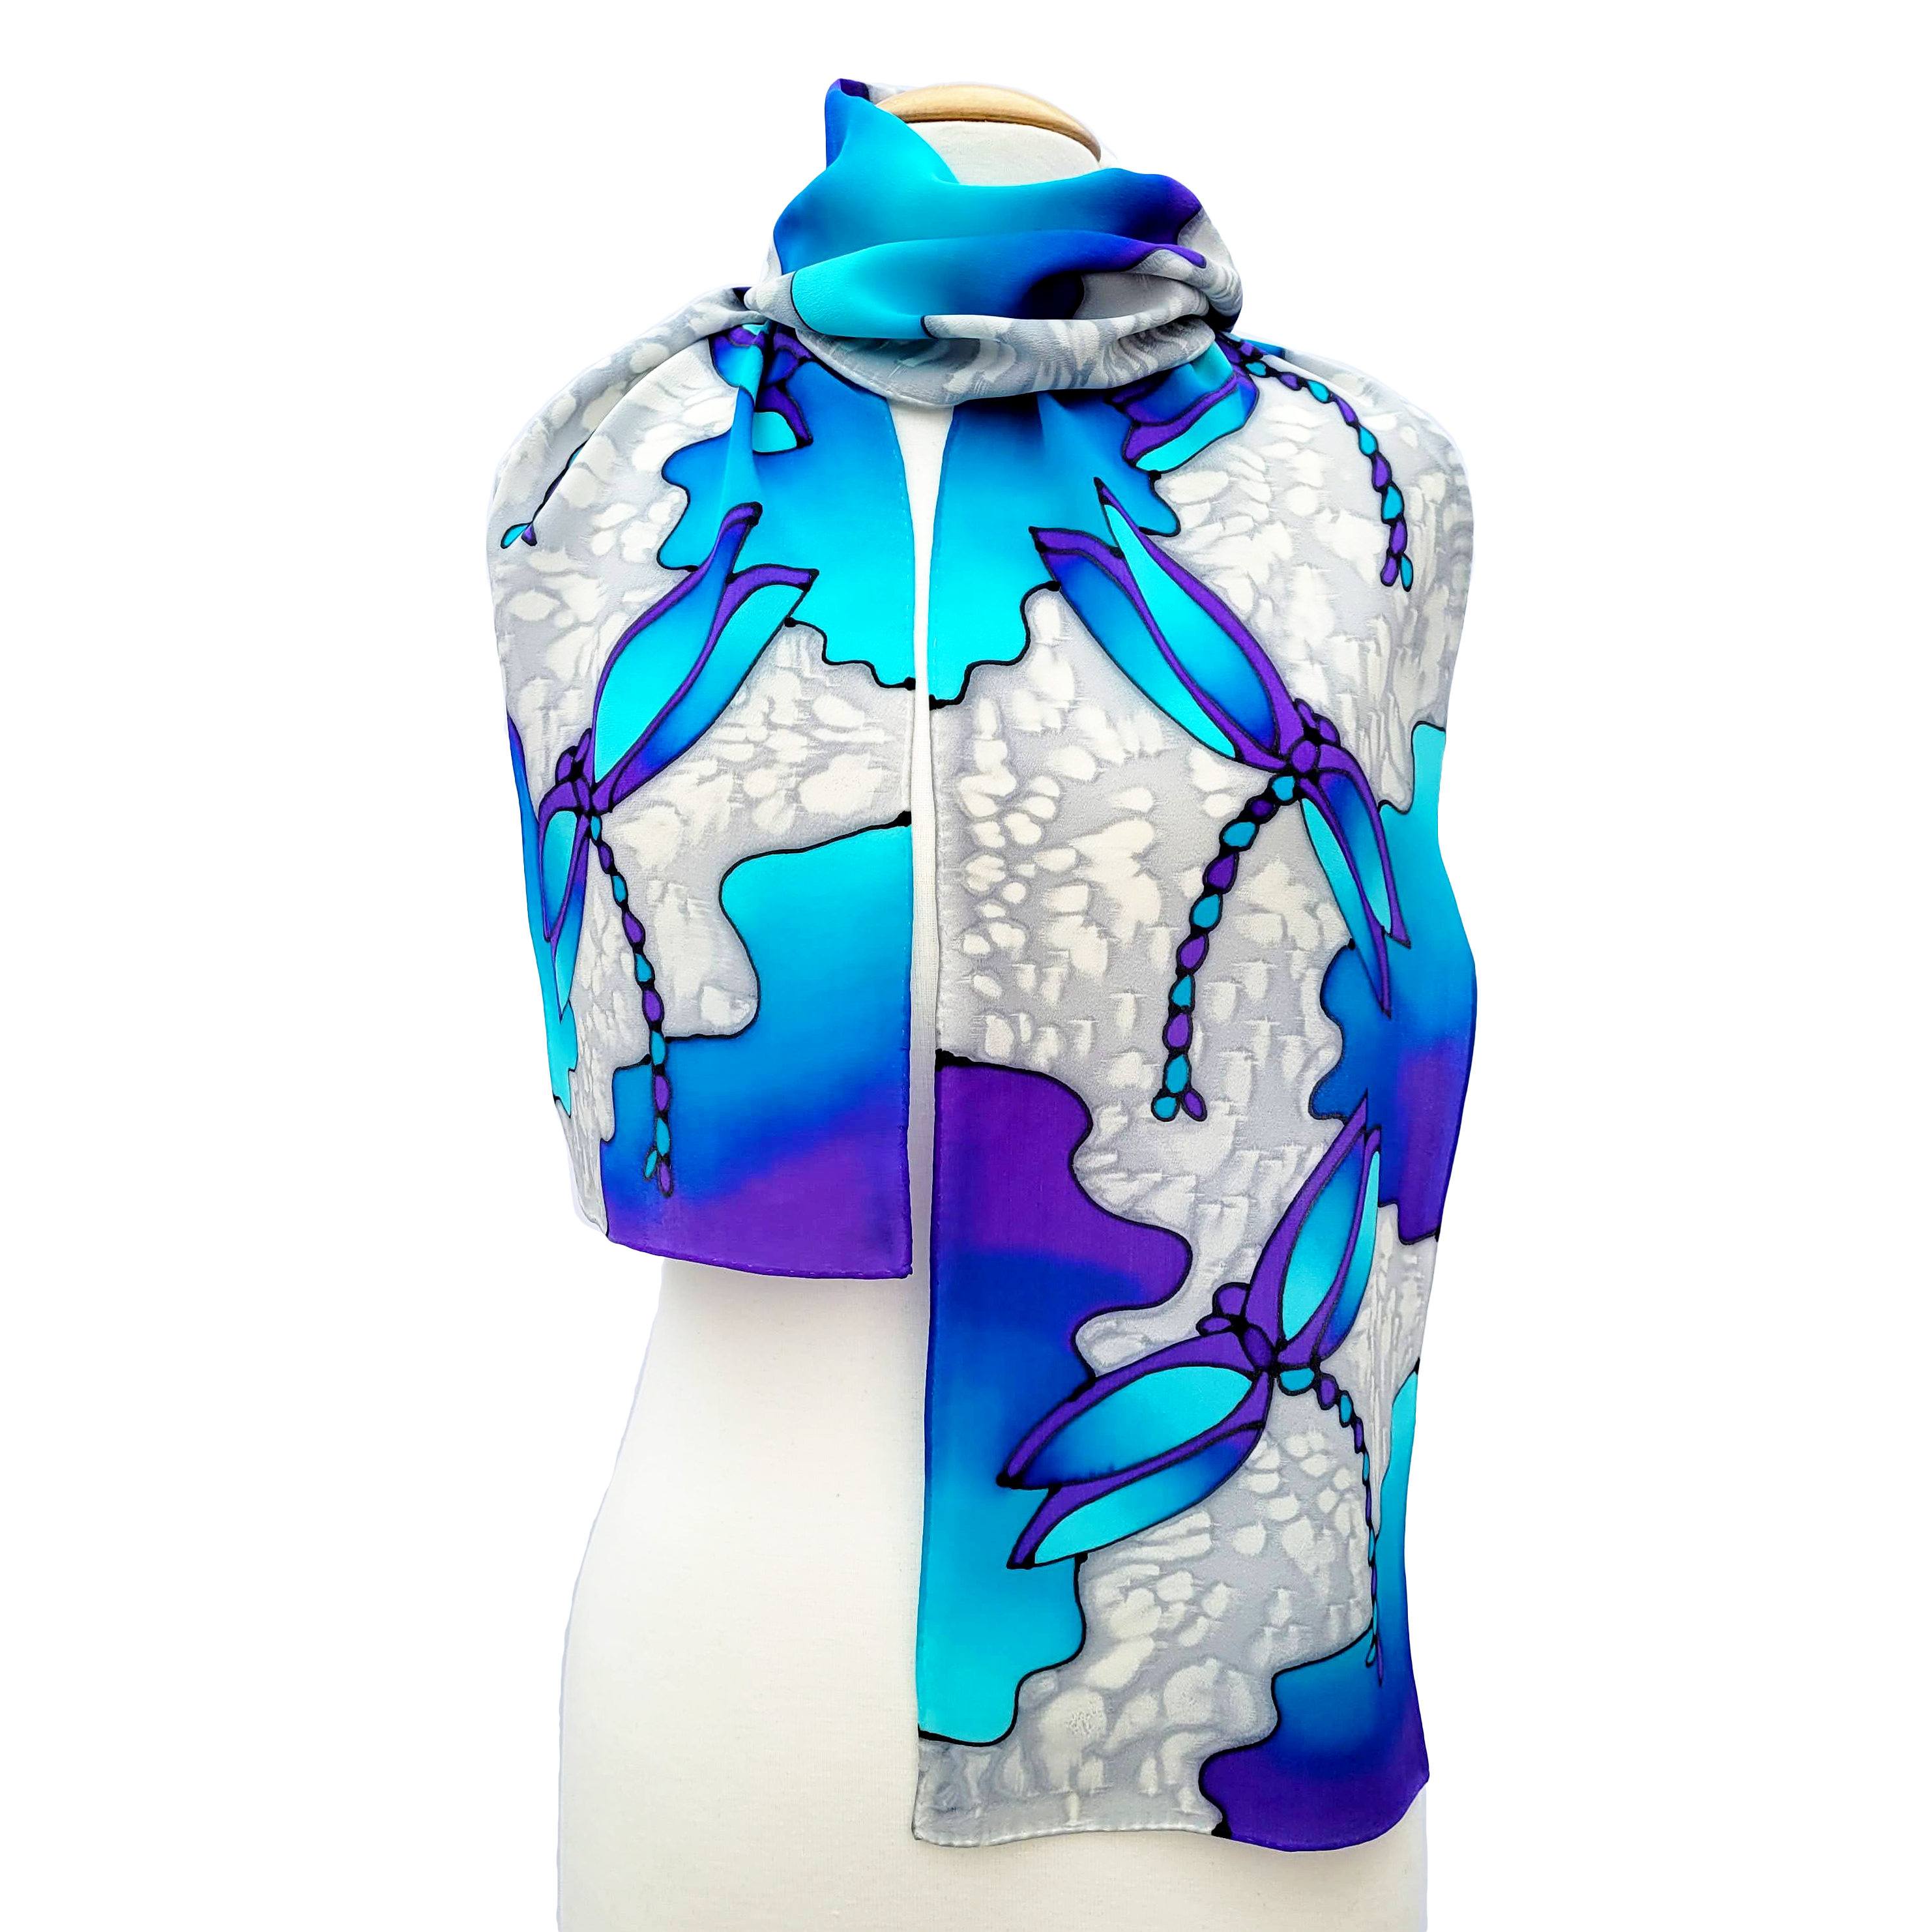 silk clothing silk scarf accessory hand painted blue dragonflies art design handmade in Canada by Lynne Kiel